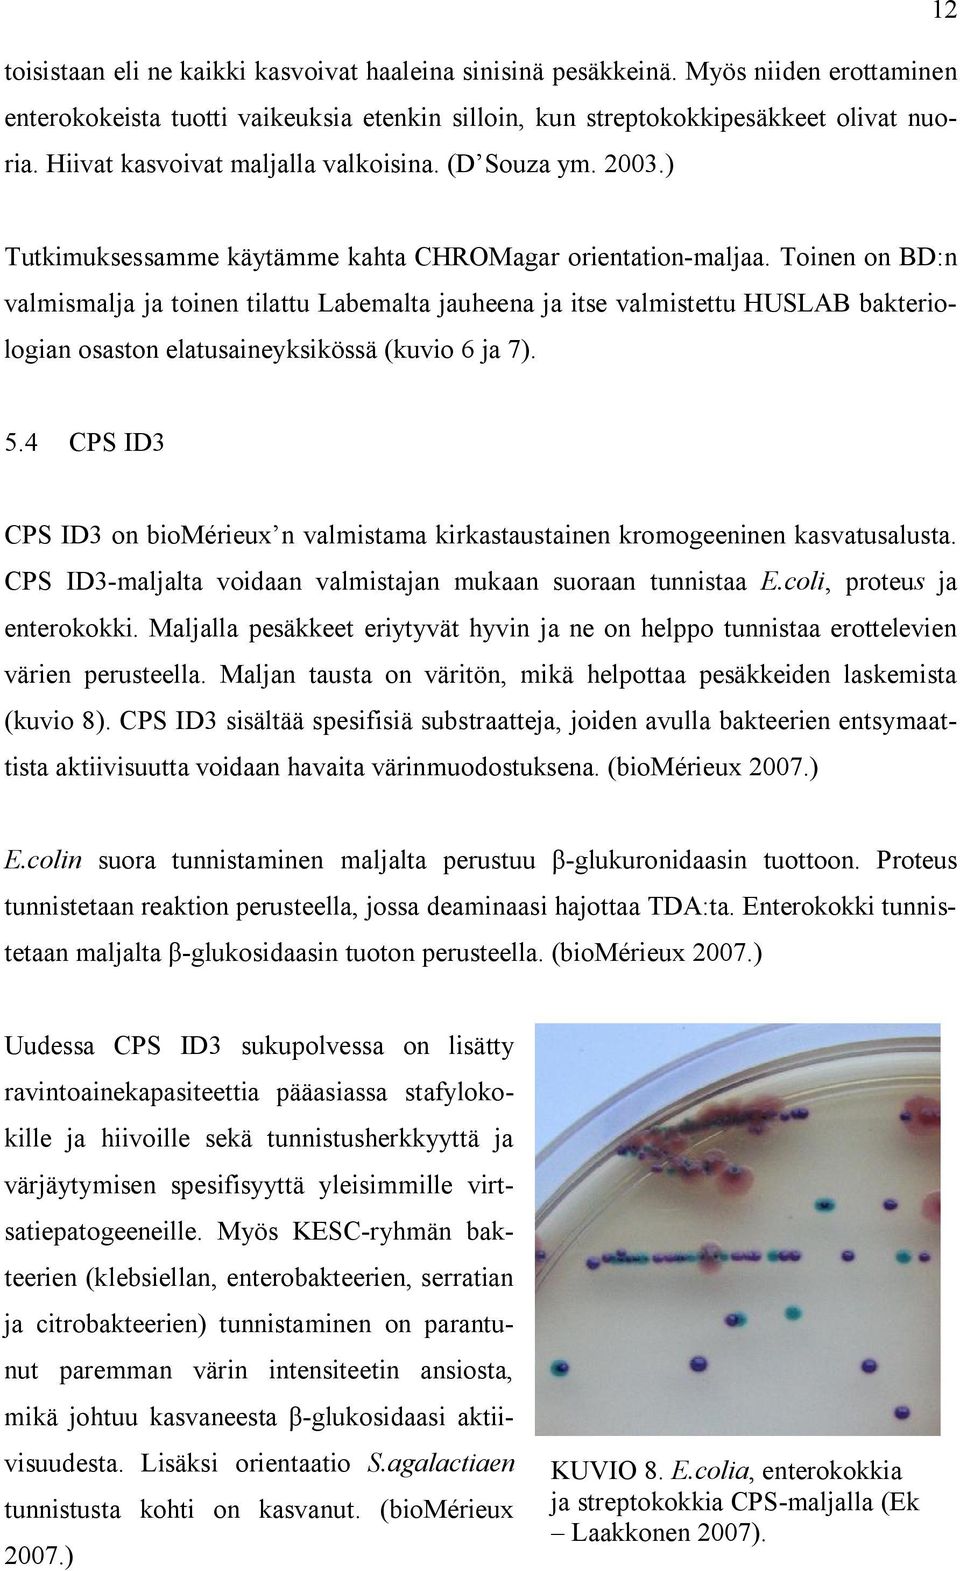 Toinen on BD:n valmismalja ja toinen tilattu Labemalta jauheena ja itse valmistettu HUSLAB bakteriologian osaston elatusaineyksikössä (kuvio 6 ja 7). 5.